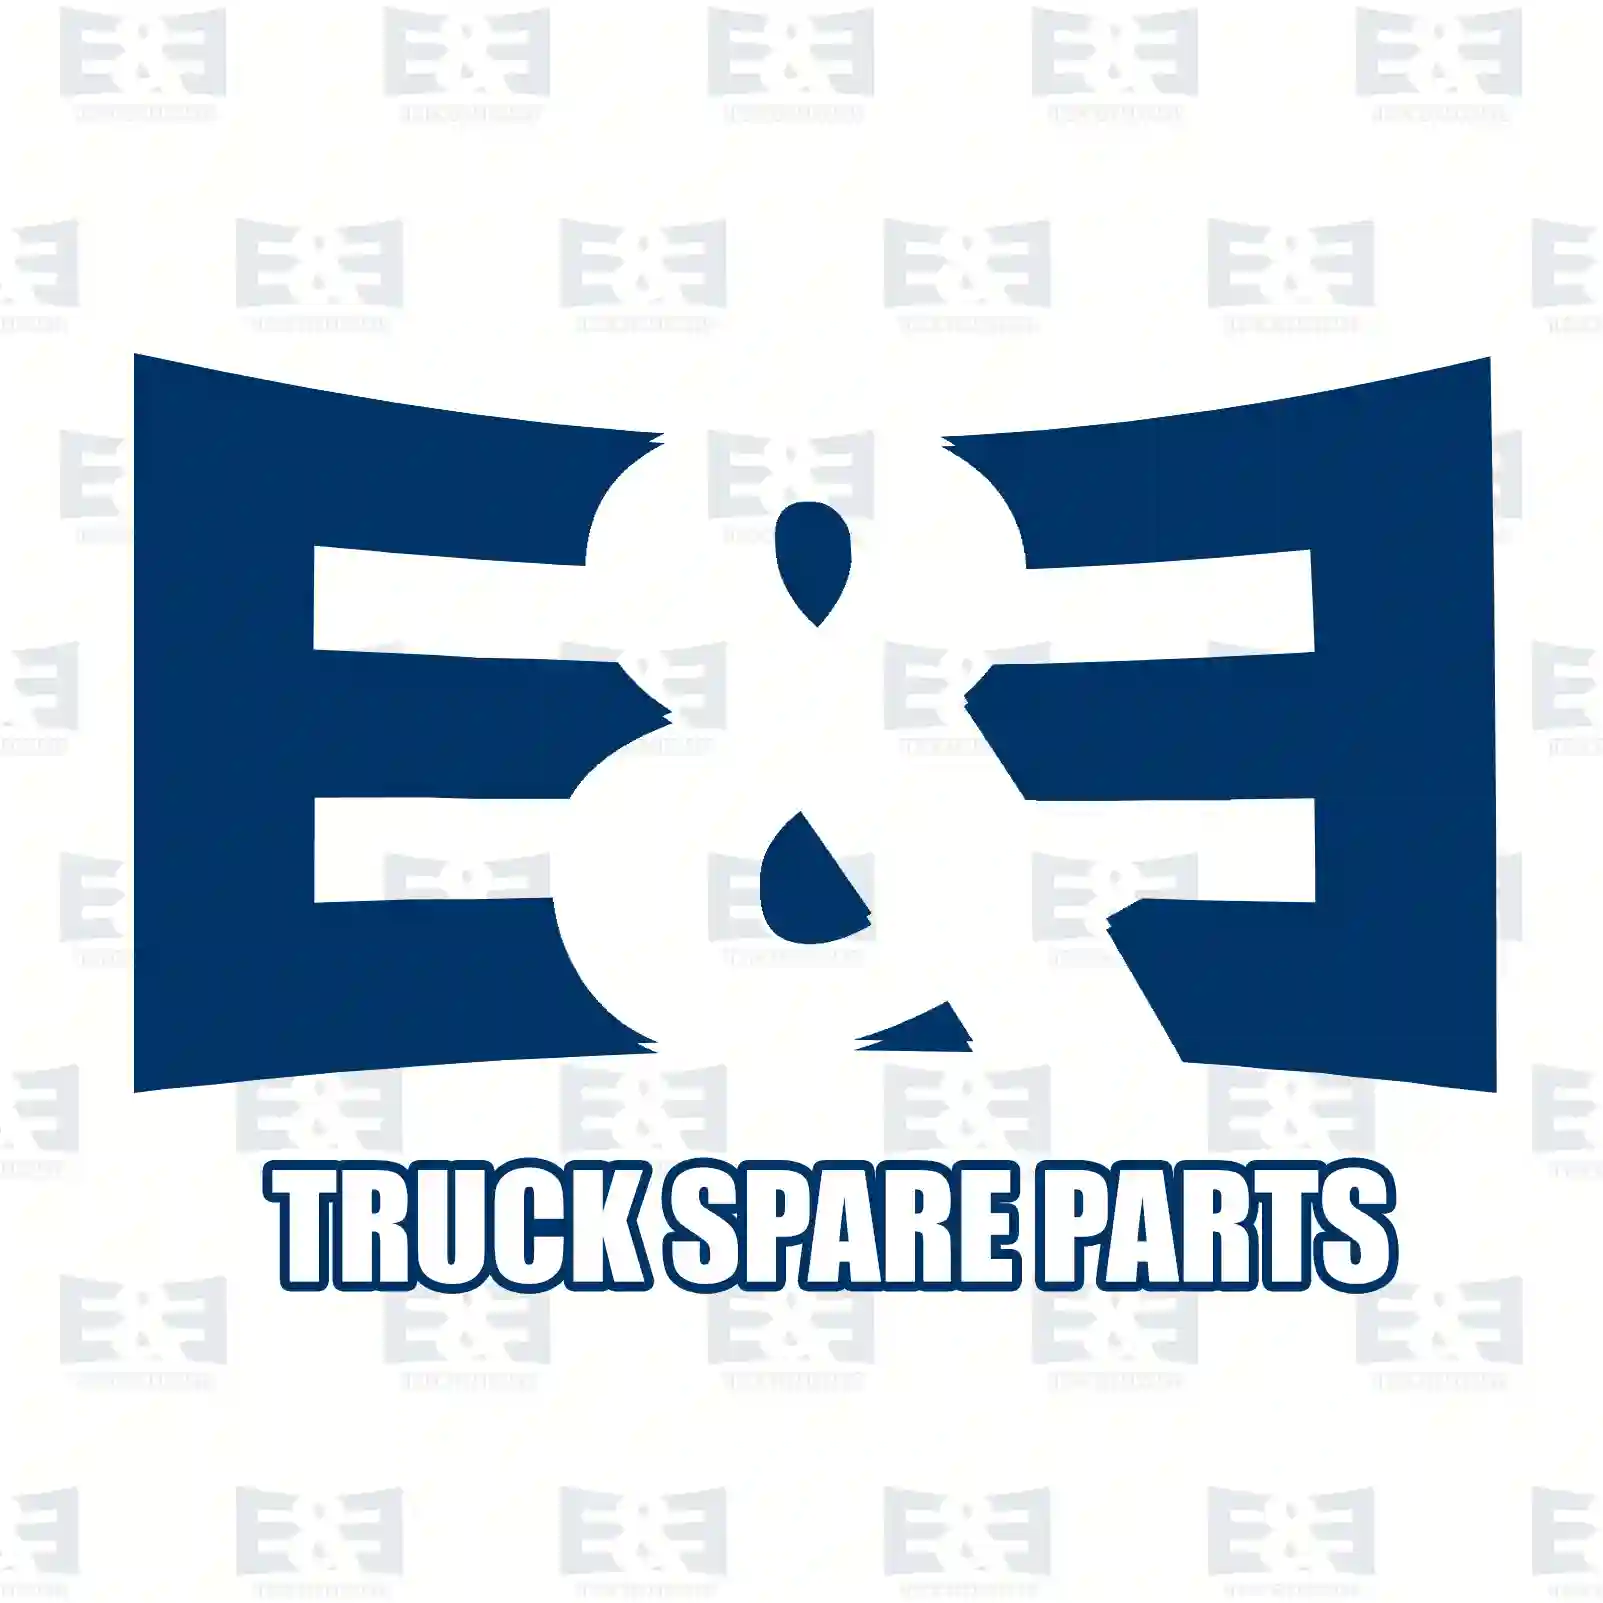 Cabin tilt cylinder, 2E2275677, 5010224331, 5010228866, , , , , , , ||  2E2275677 E&E Truck Spare Parts | Truck Spare Parts, Auotomotive Spare Parts Cabin tilt cylinder, 2E2275677, 5010224331, 5010228866, , , , , , , ||  2E2275677 E&E Truck Spare Parts | Truck Spare Parts, Auotomotive Spare Parts